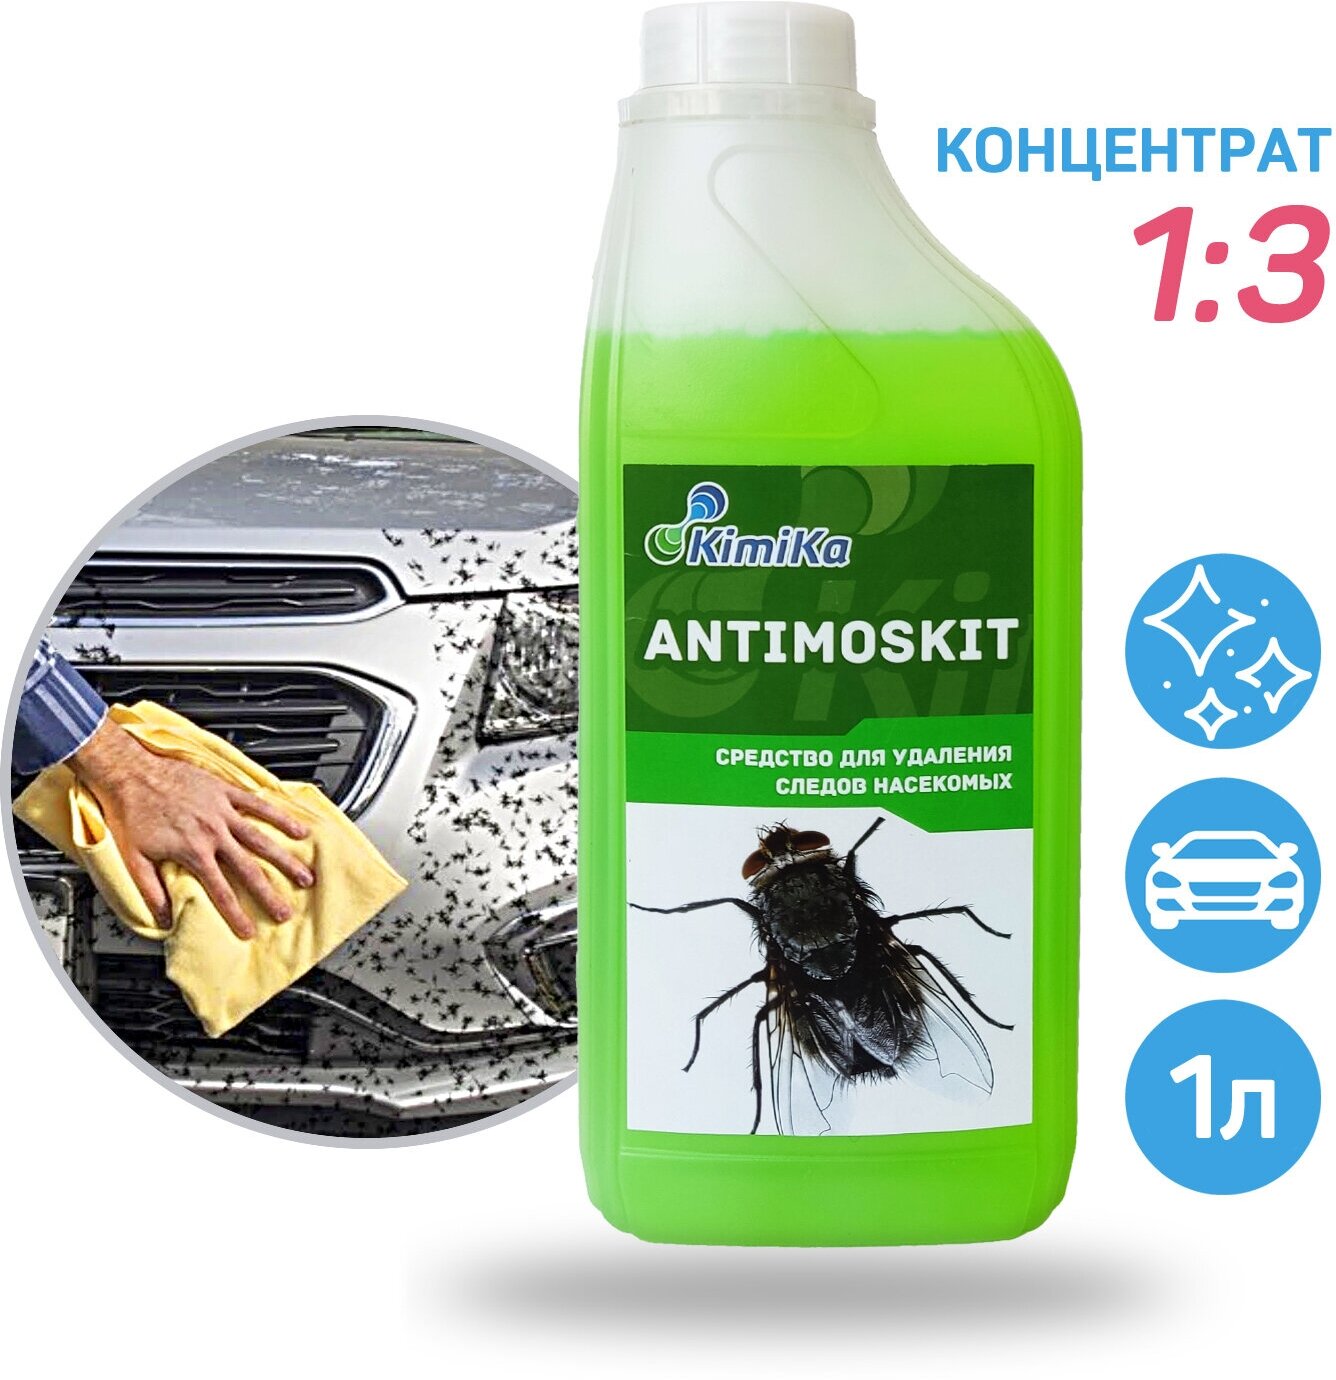 Очиститель следов насекомых KimiKa ANTIMOSKIT, 1 литр, концентрат